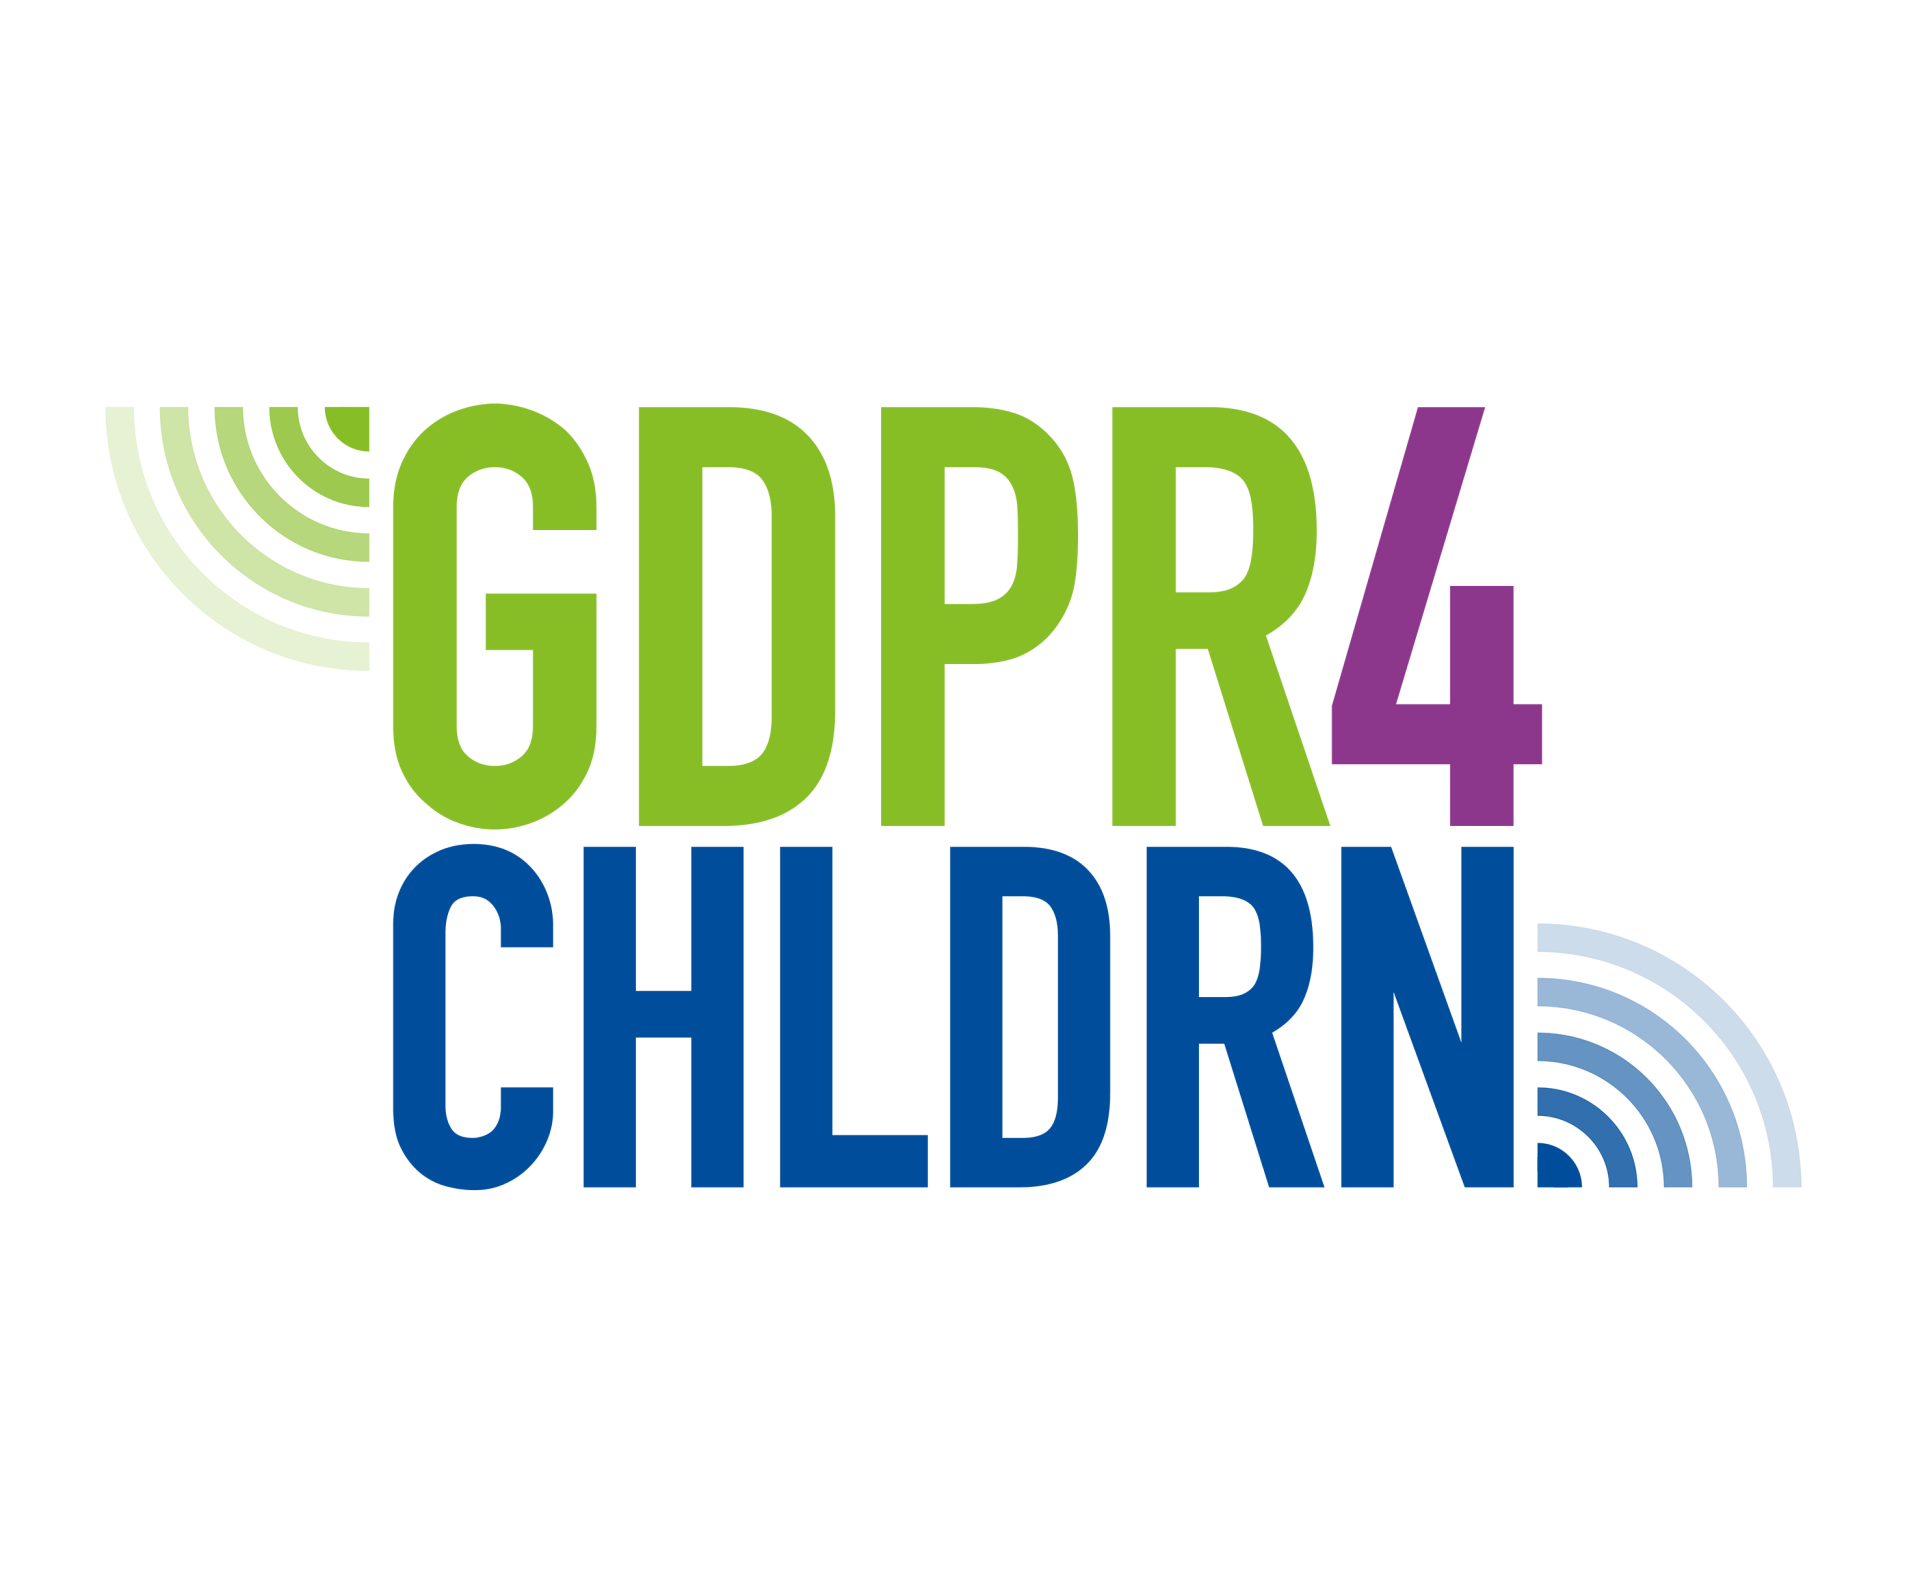 Tietosuoja haltuun harrastustoiminnassa -hankkeen logo, jossa on tietosuojalainsäädäntöön ja lapsiin liittyvä kirjainlyhenne GDPR4CHLDRN.